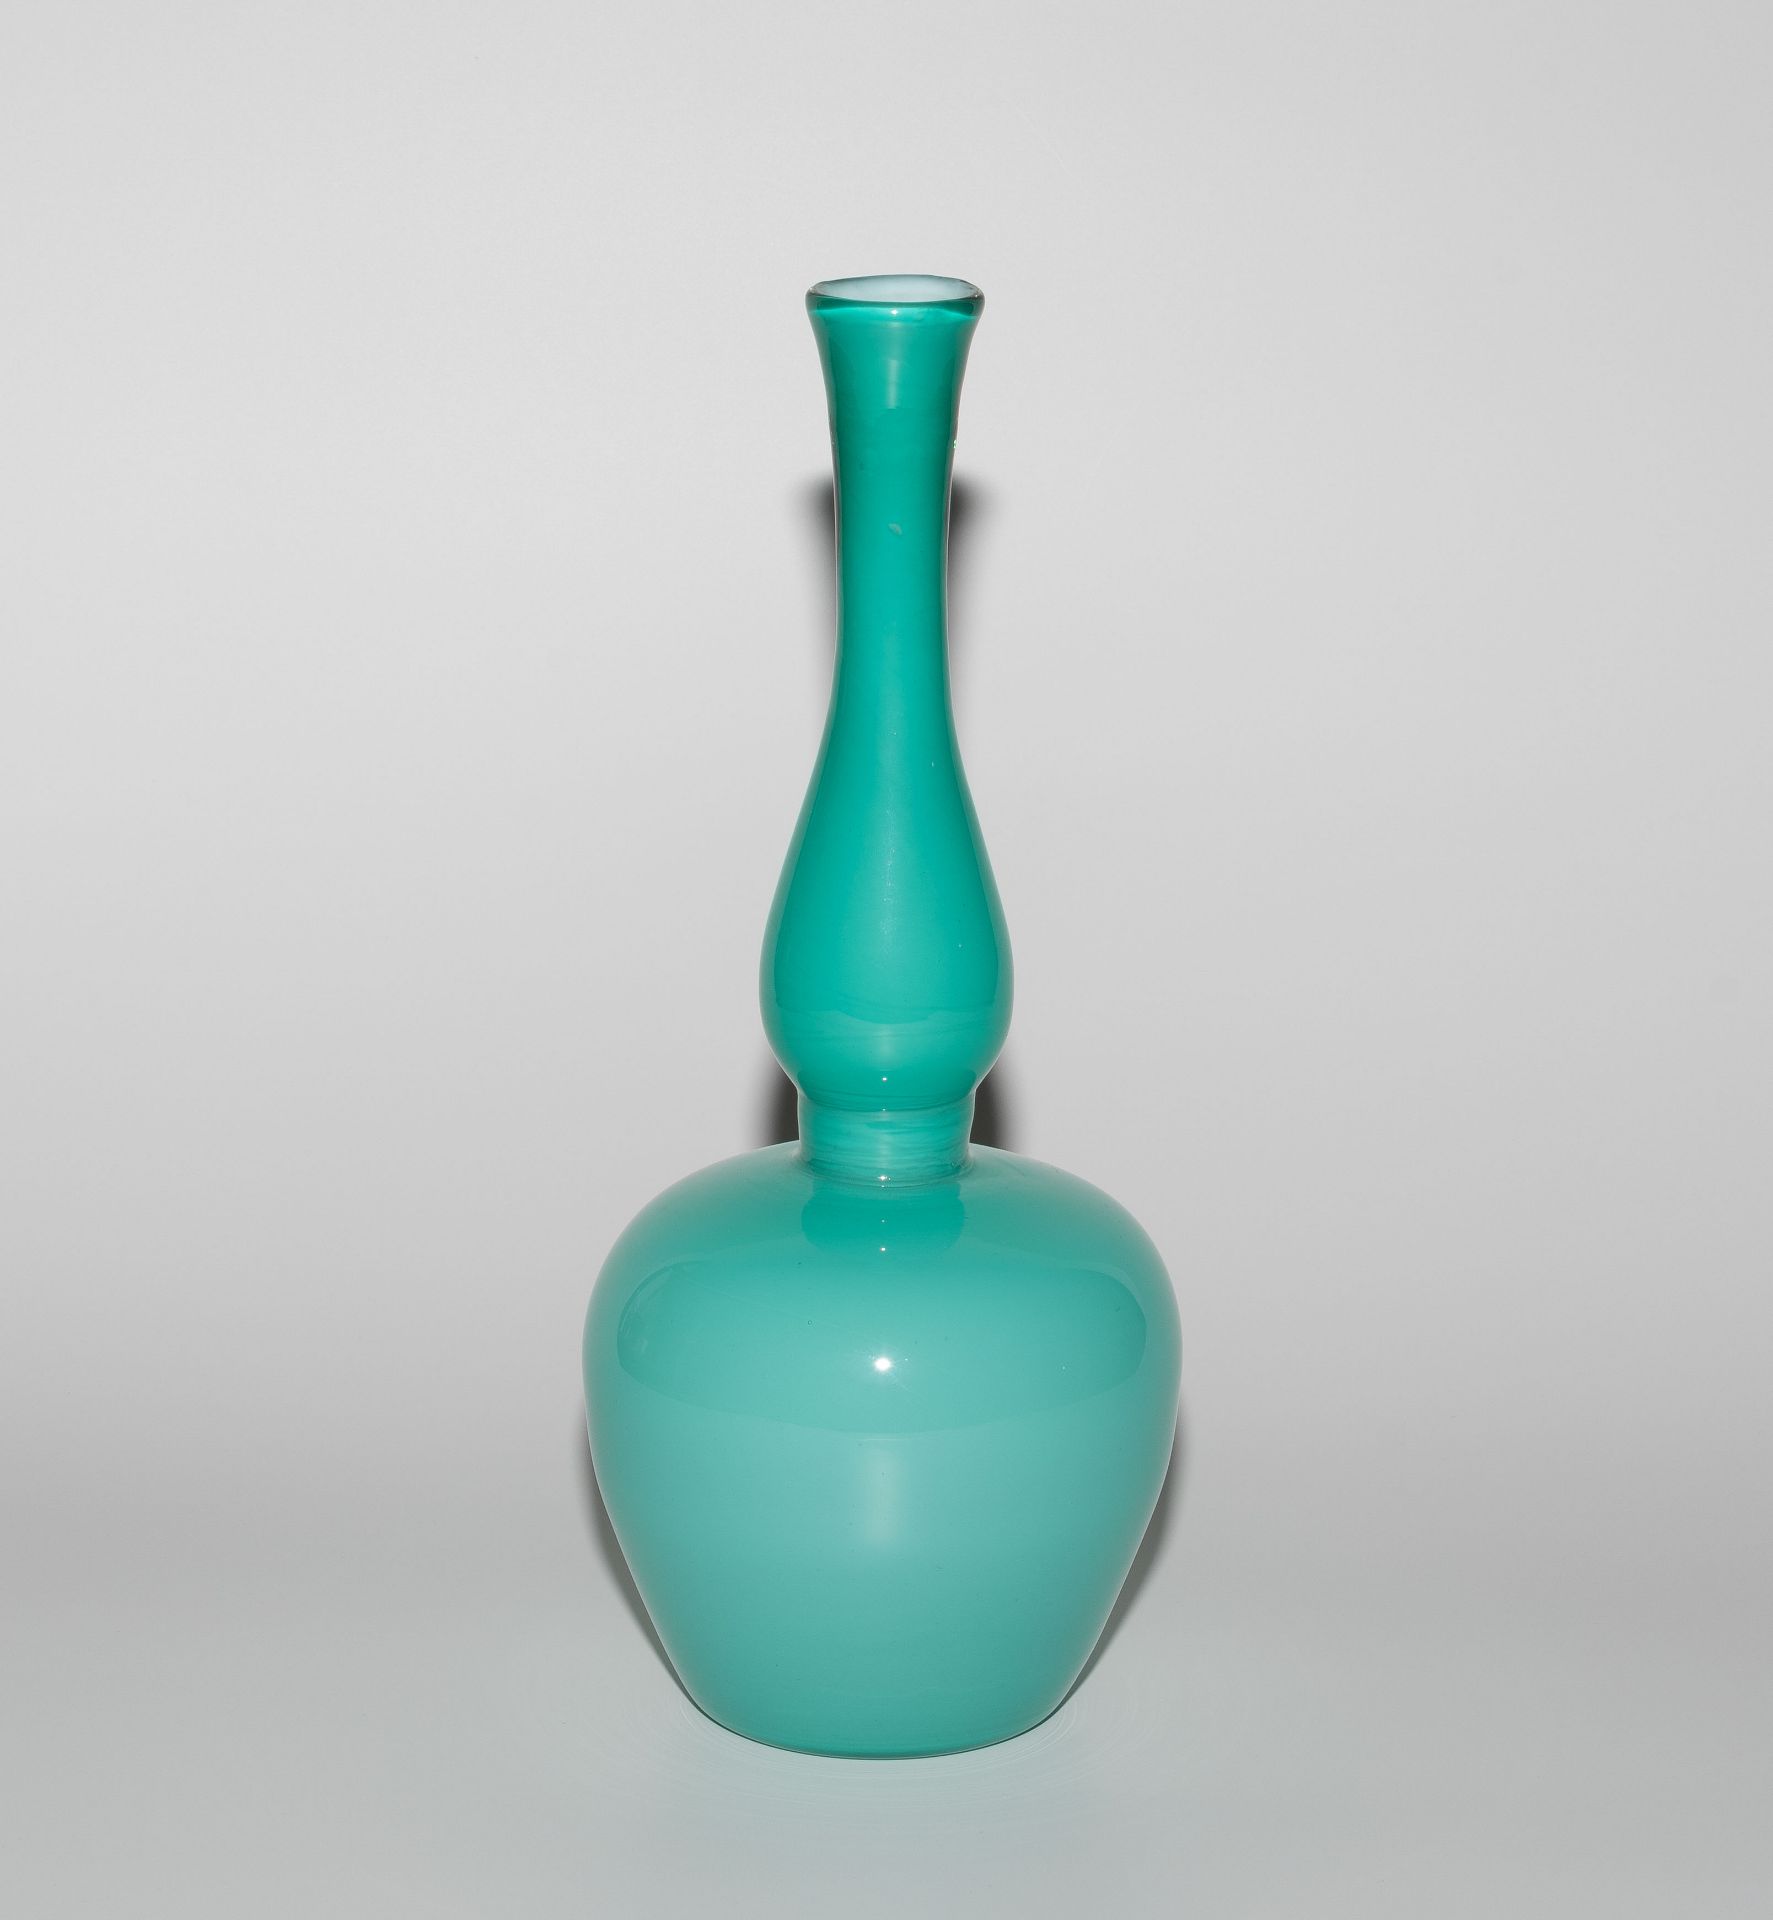 Paolo Venini, Vase "Incamiciato, Modell 3902" - Image 2 of 8